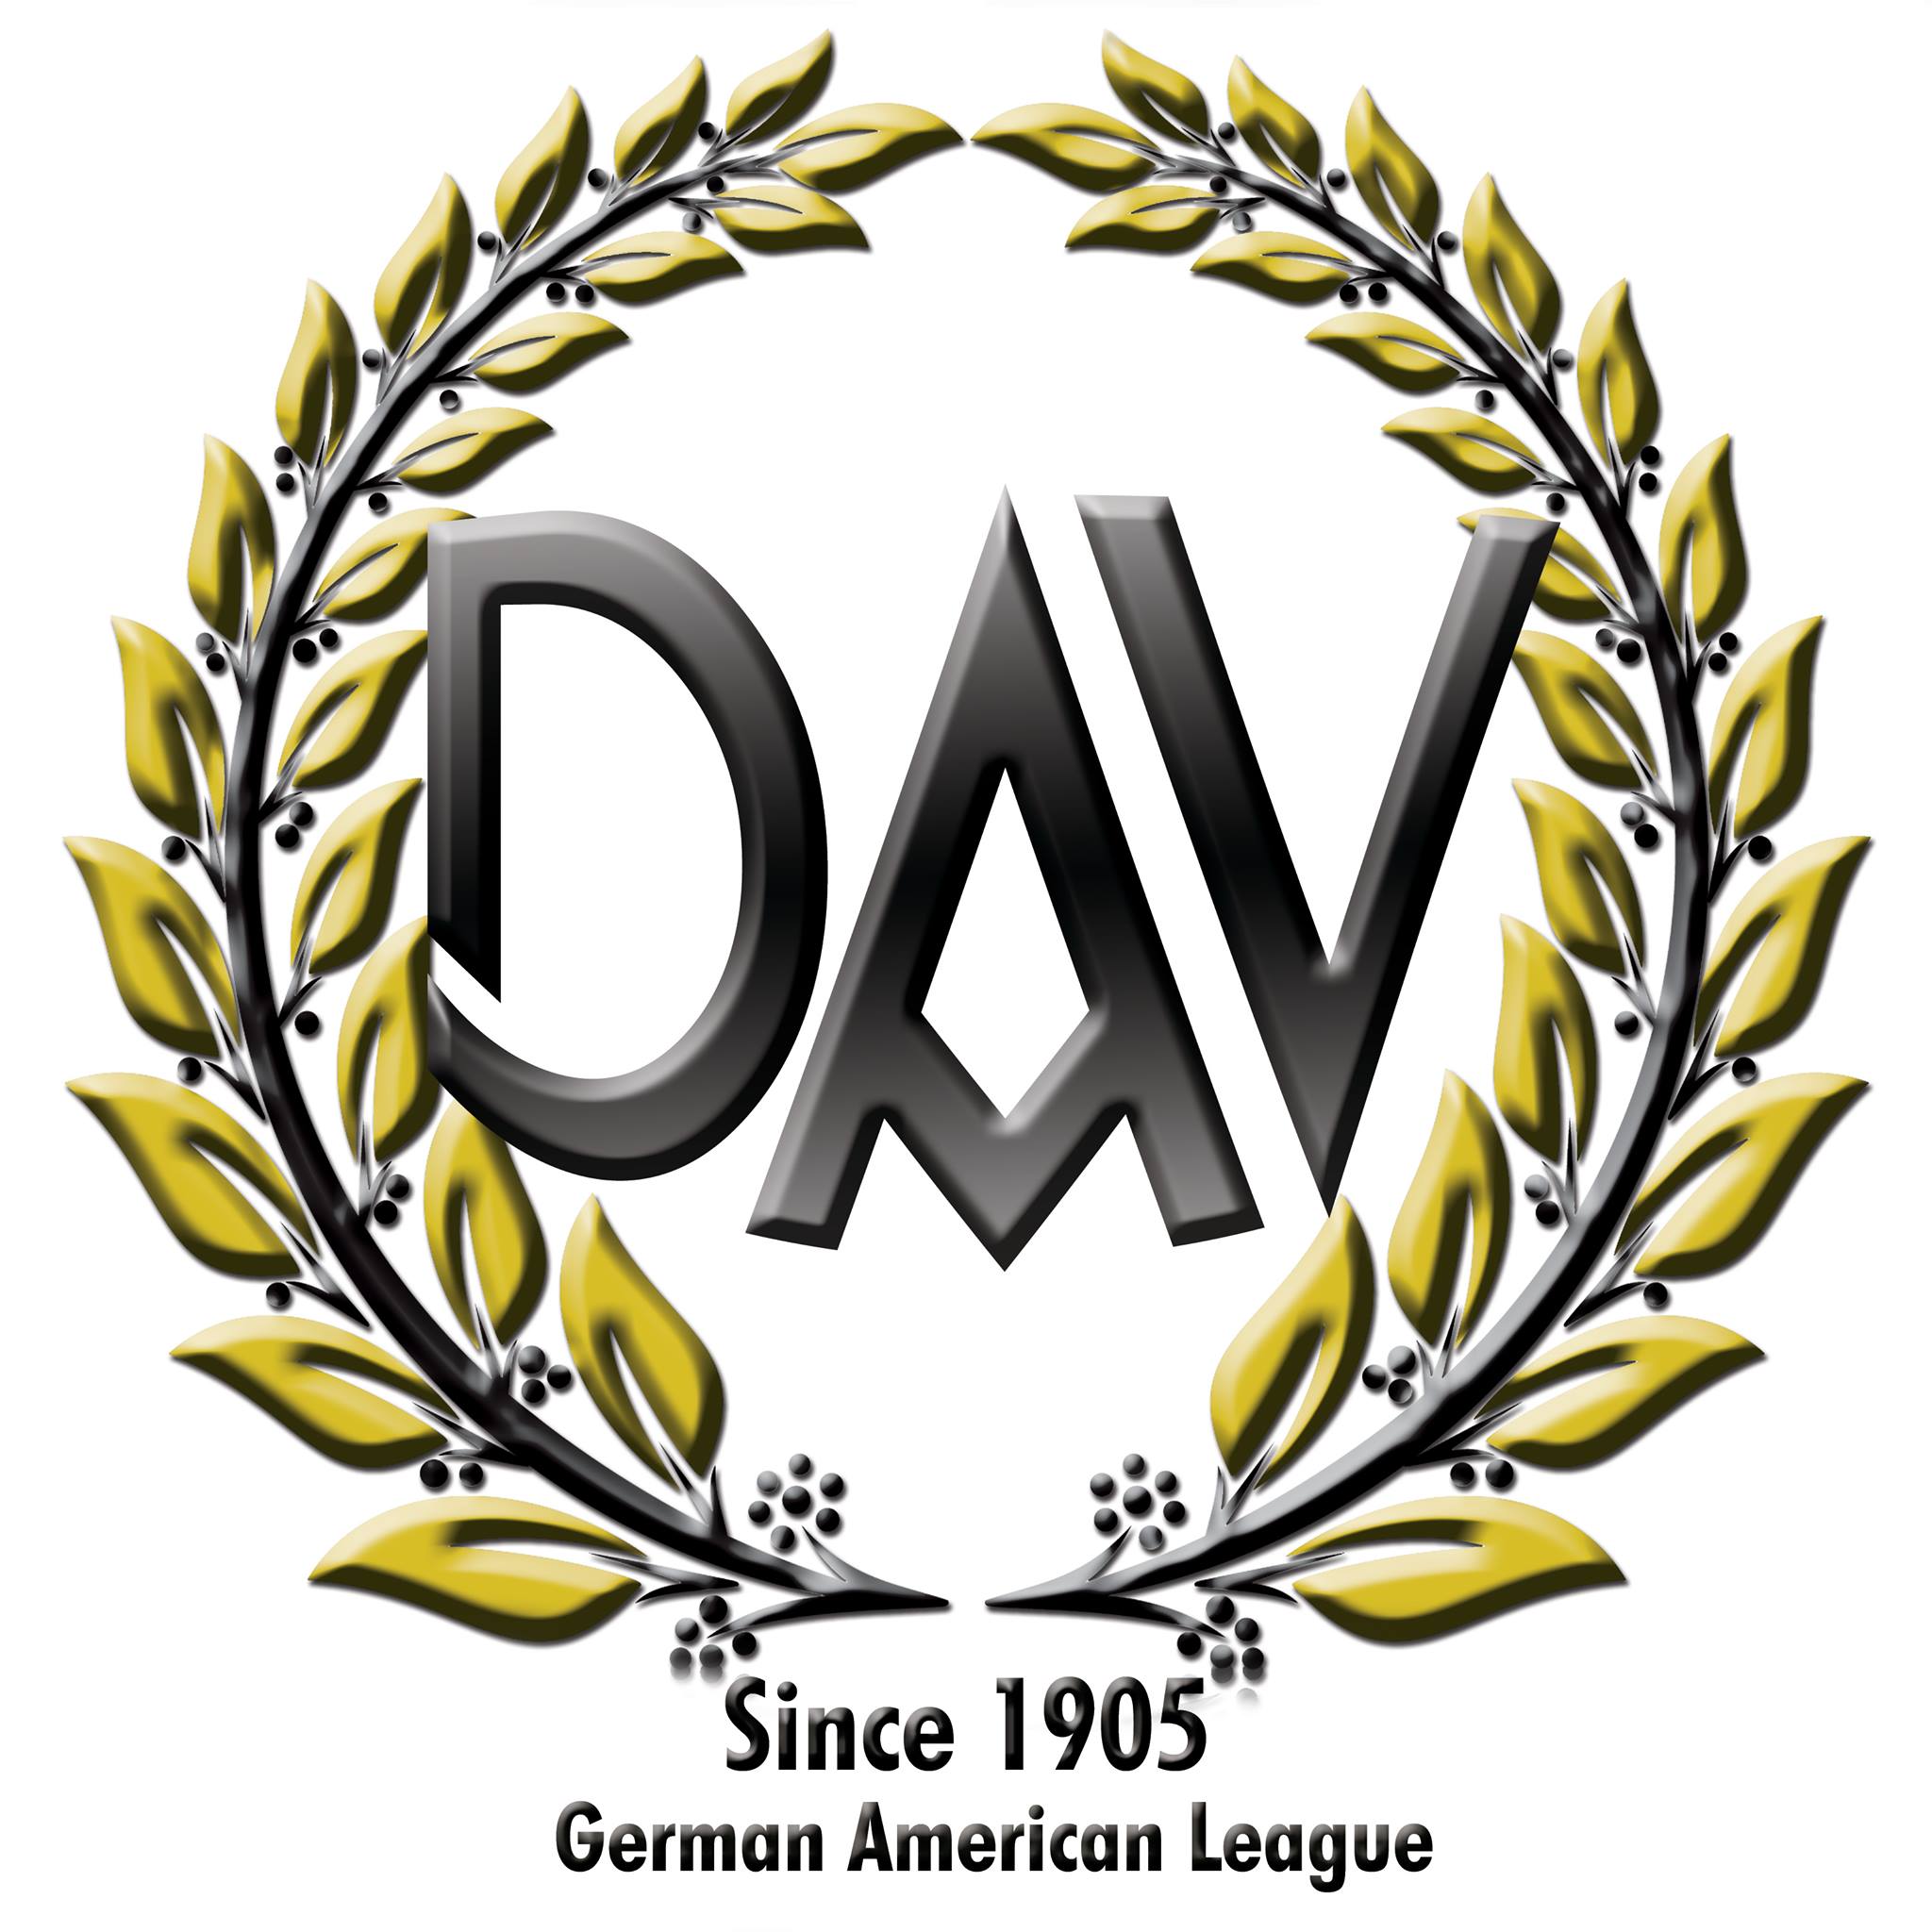 German Speaking Organizations in San Francisco California - German-American League of Los Angeles, Inc., Ltd.